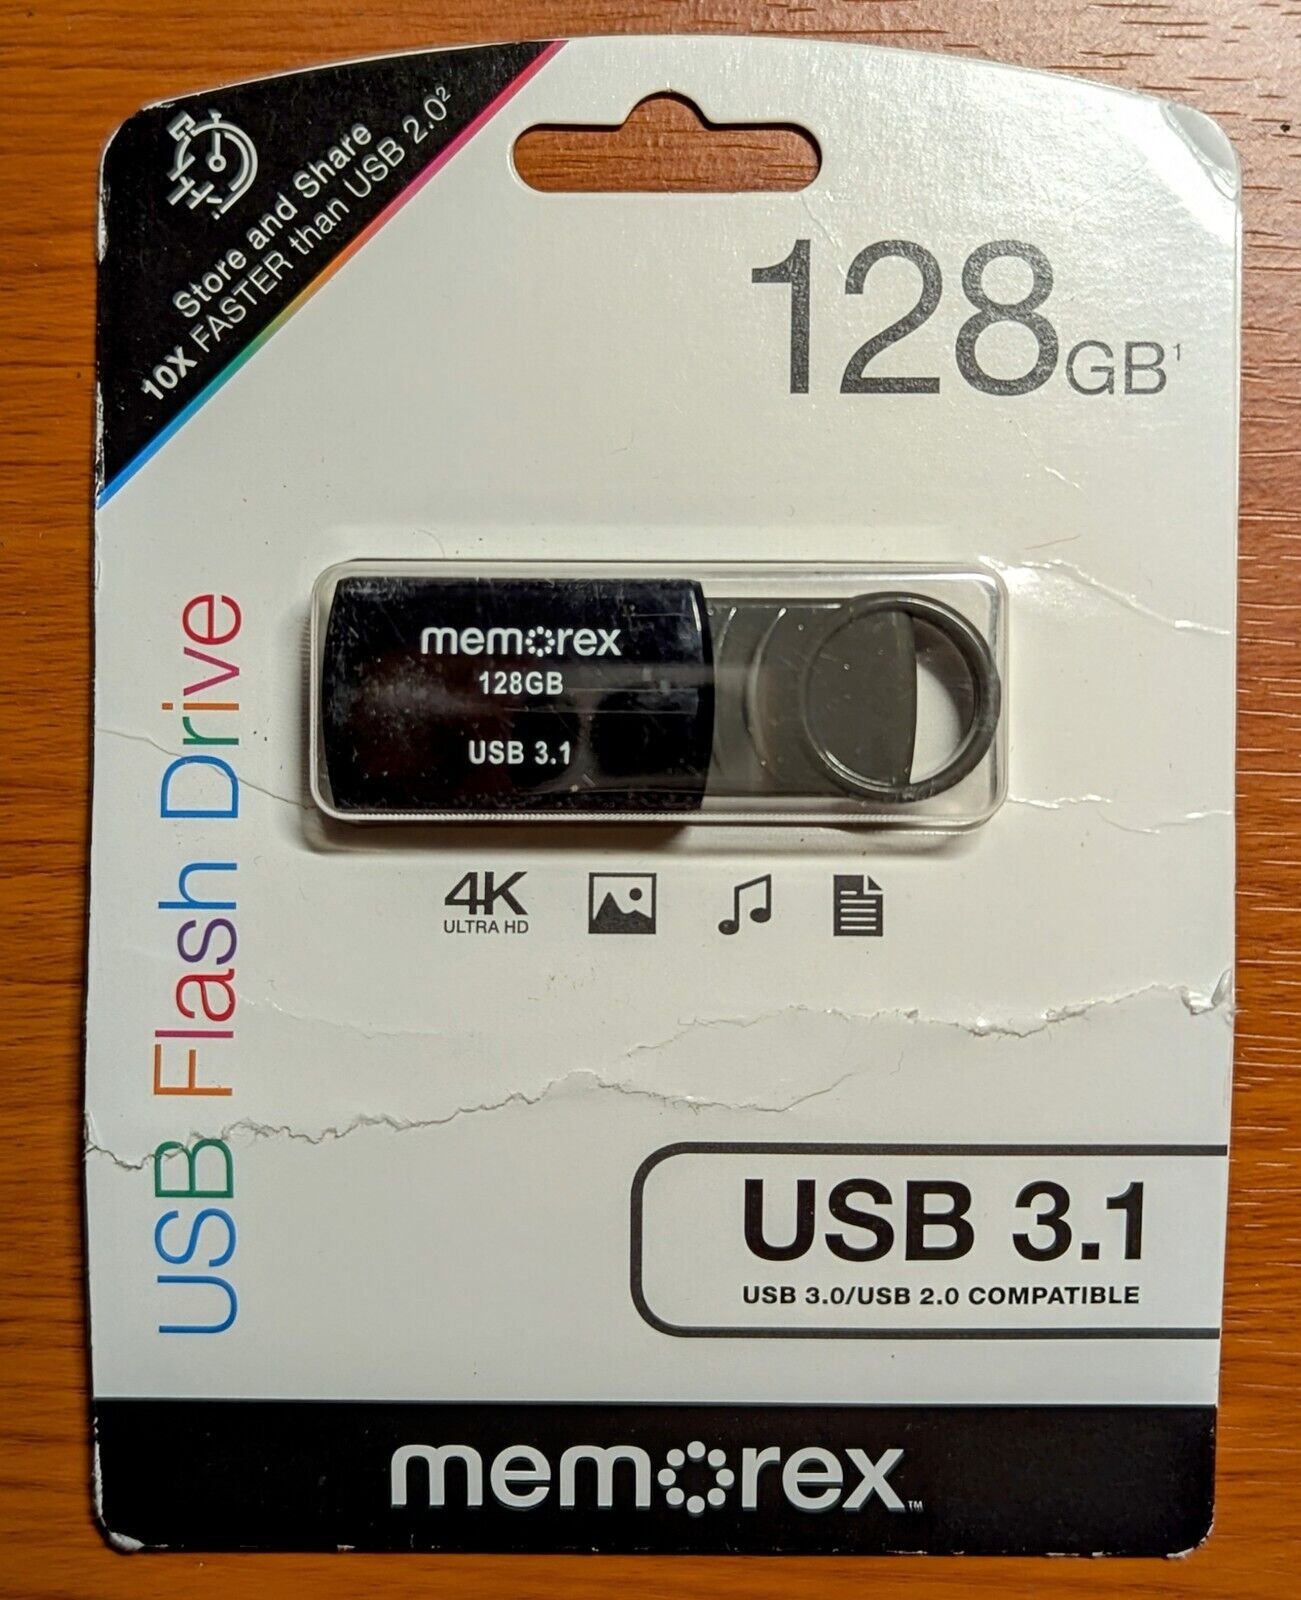 128GB USB 3.1 Flash Drive 4K Ultra HD By Memorex 